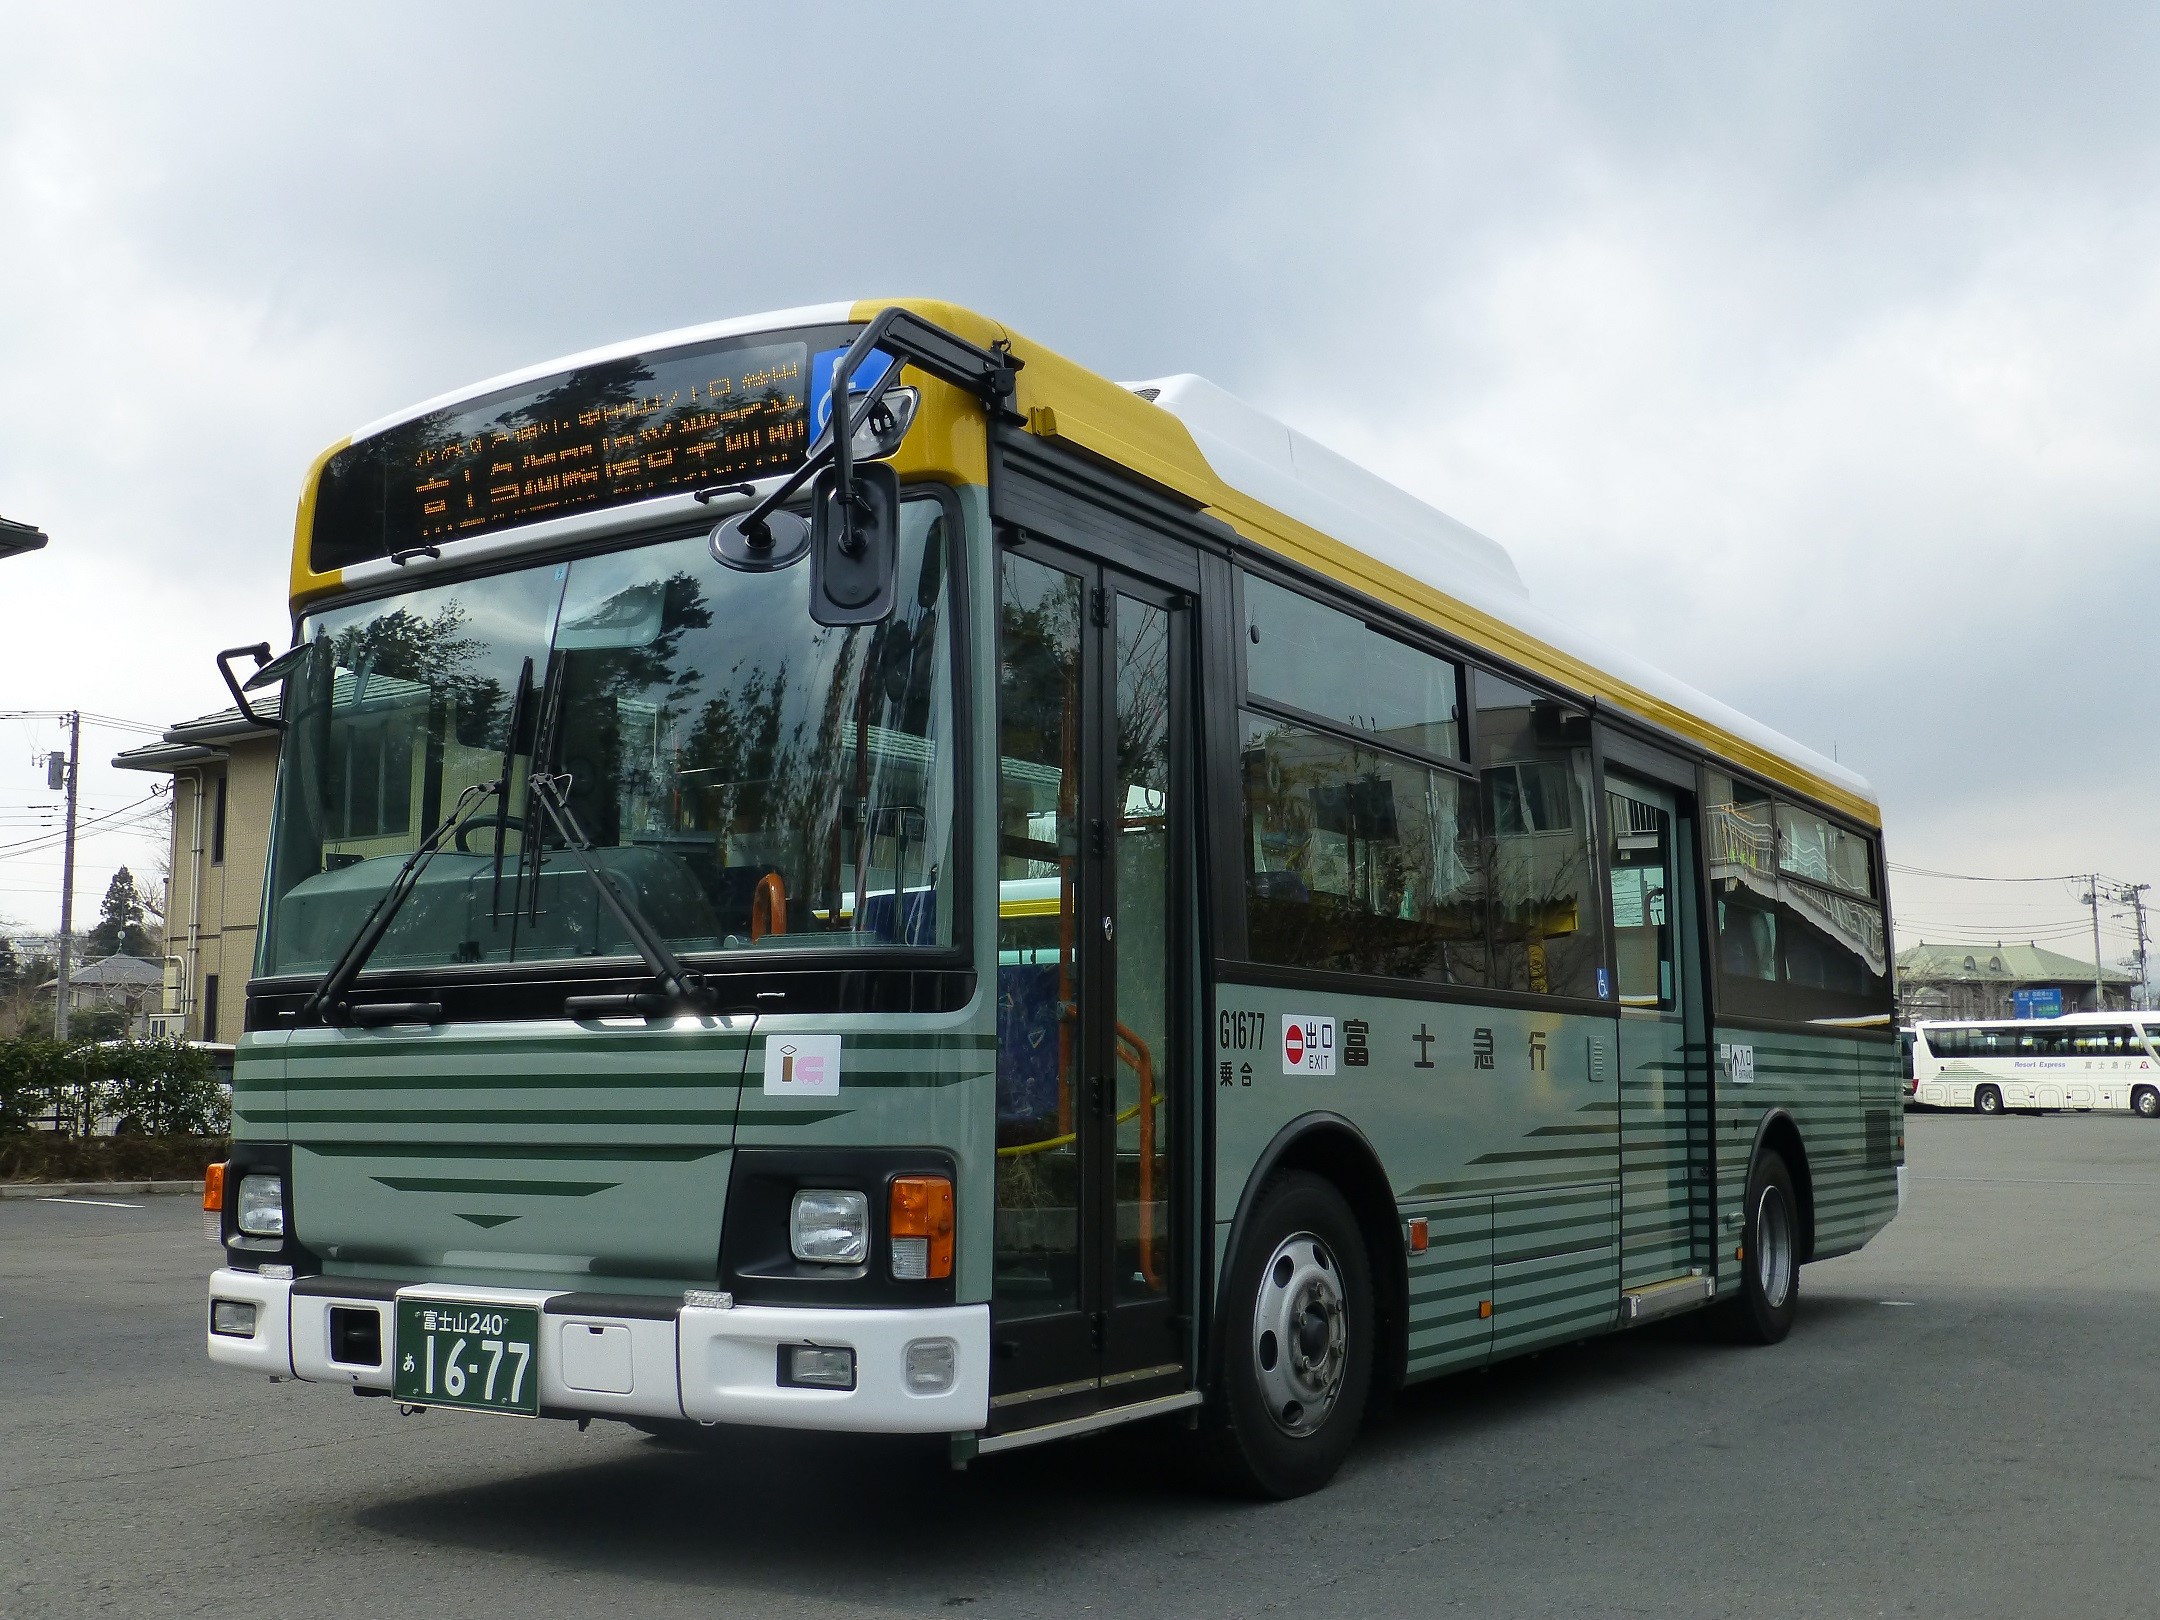 富士 富士宮市内の路線バス1日乗り放題とポップサーカス入場券のお得な バスセット券 を発売 富士急行のプレスリリース